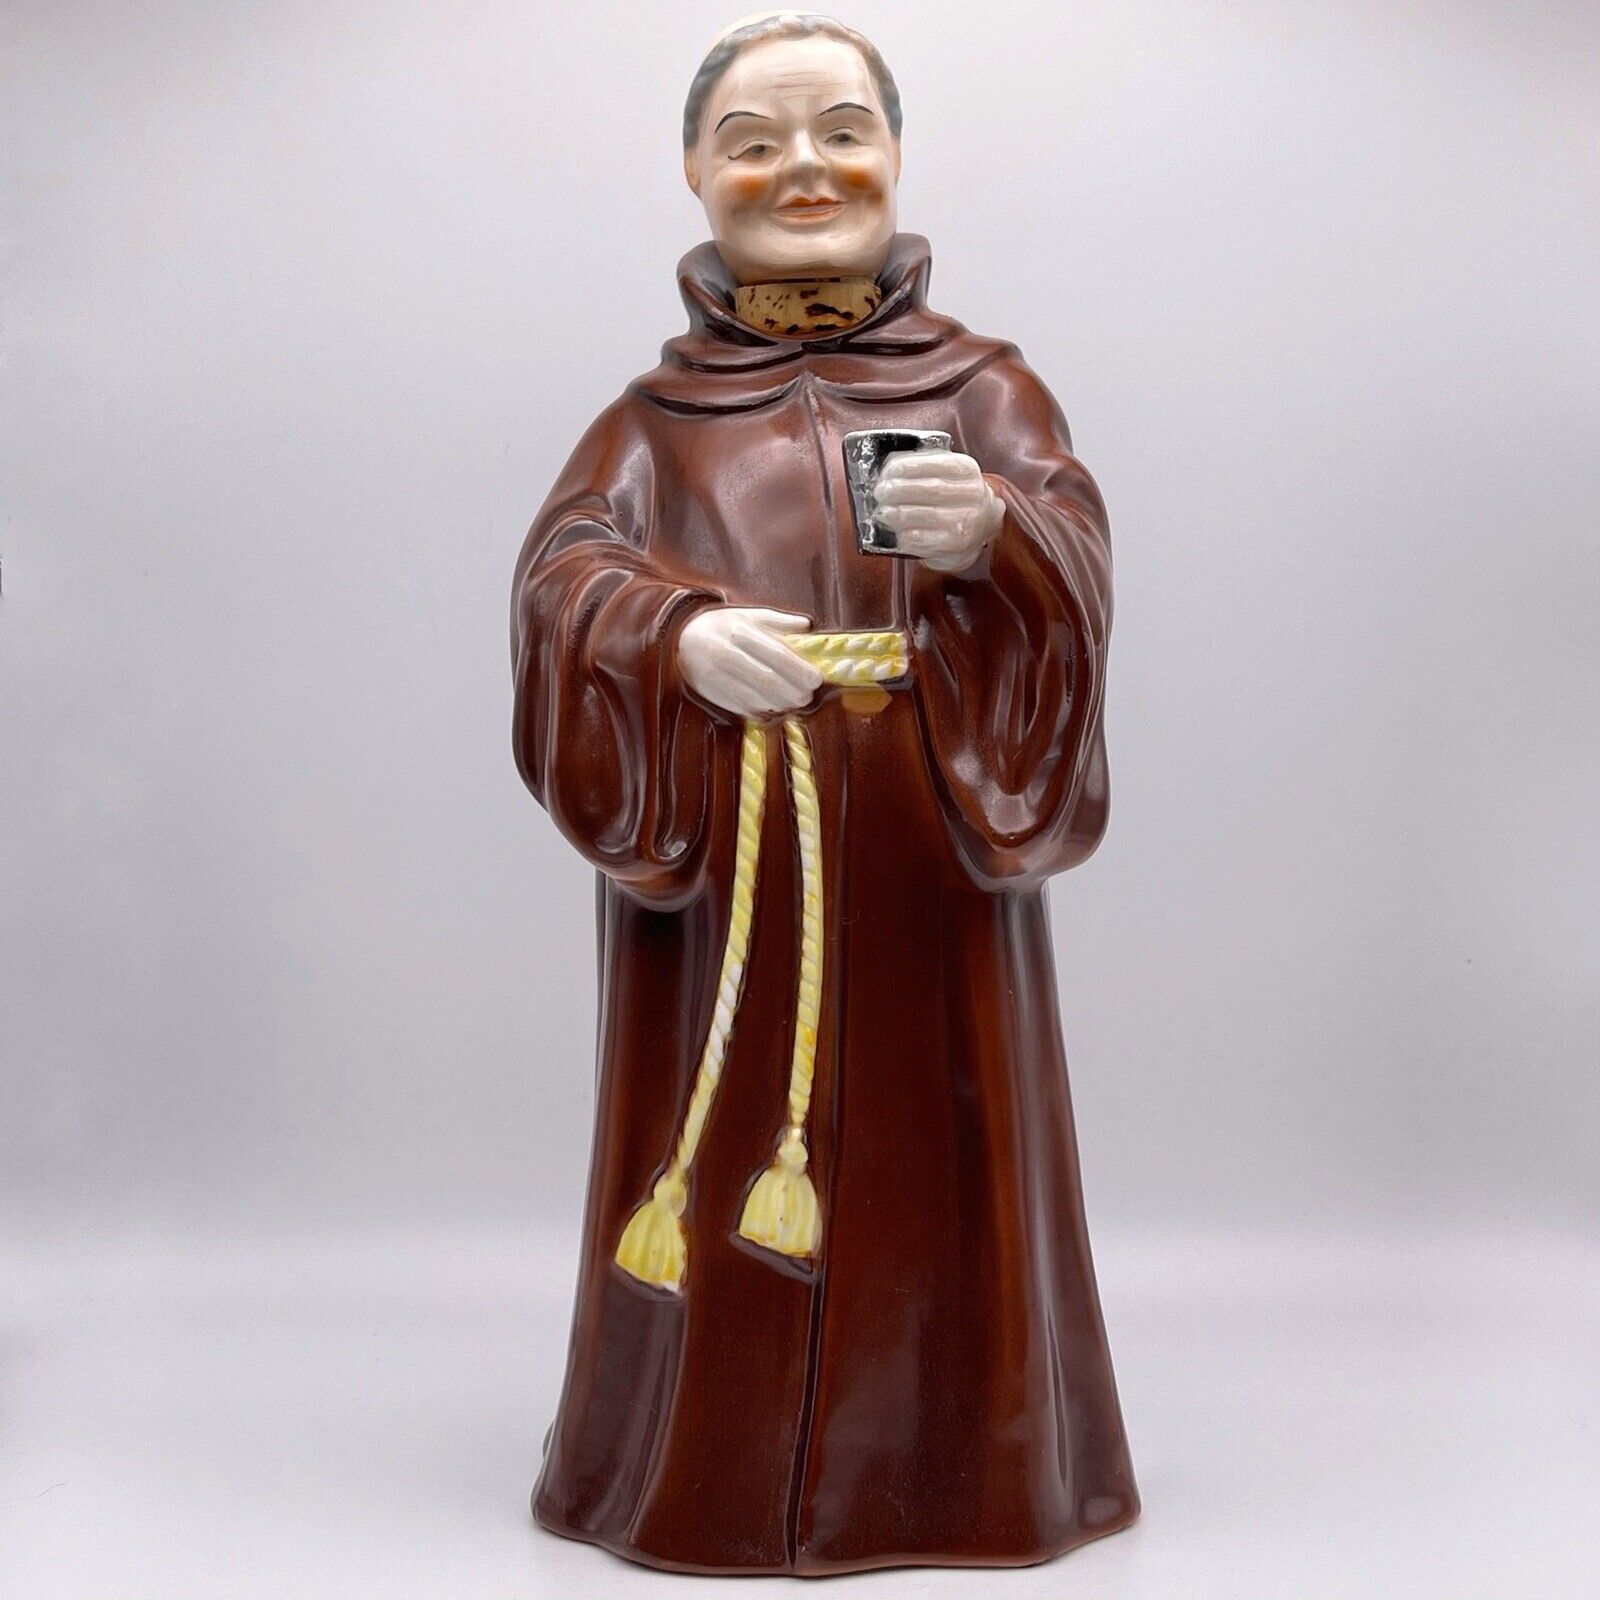 Vintage MCM Porcelain Franciscan Friar Tuck Monk 9” Decanter with Cork Stopper